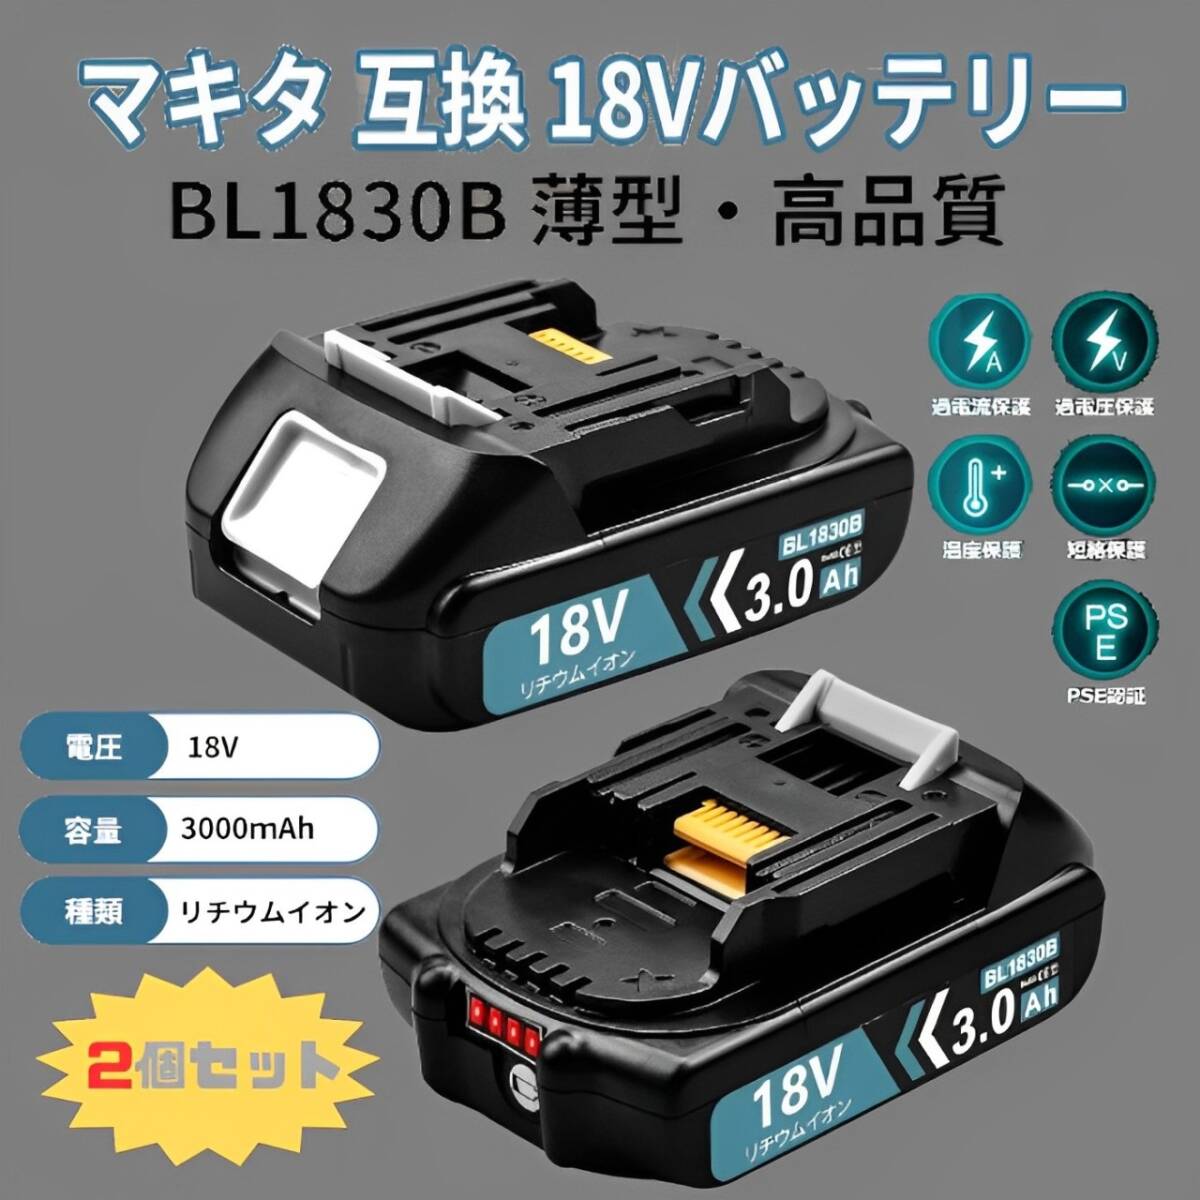 2個セット BL1830B互換マキタ18vバッテリー 3.0Ah 薄型 軽量 小型 マキタ電動工具 リチウムイオンバッテリー LEDランプ付き PSE認証